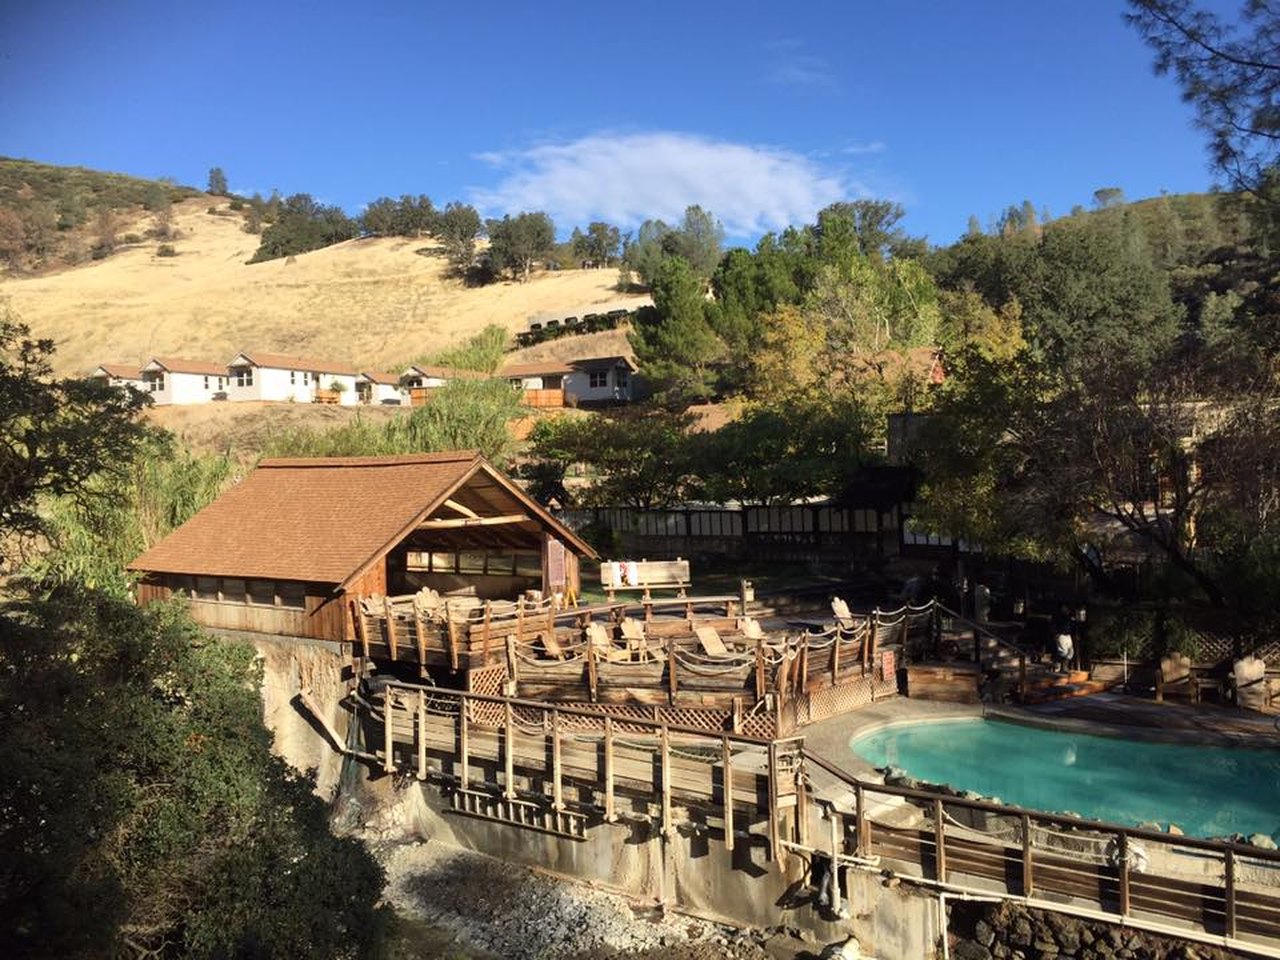 Wilbur Hot Springs – Williams, CA